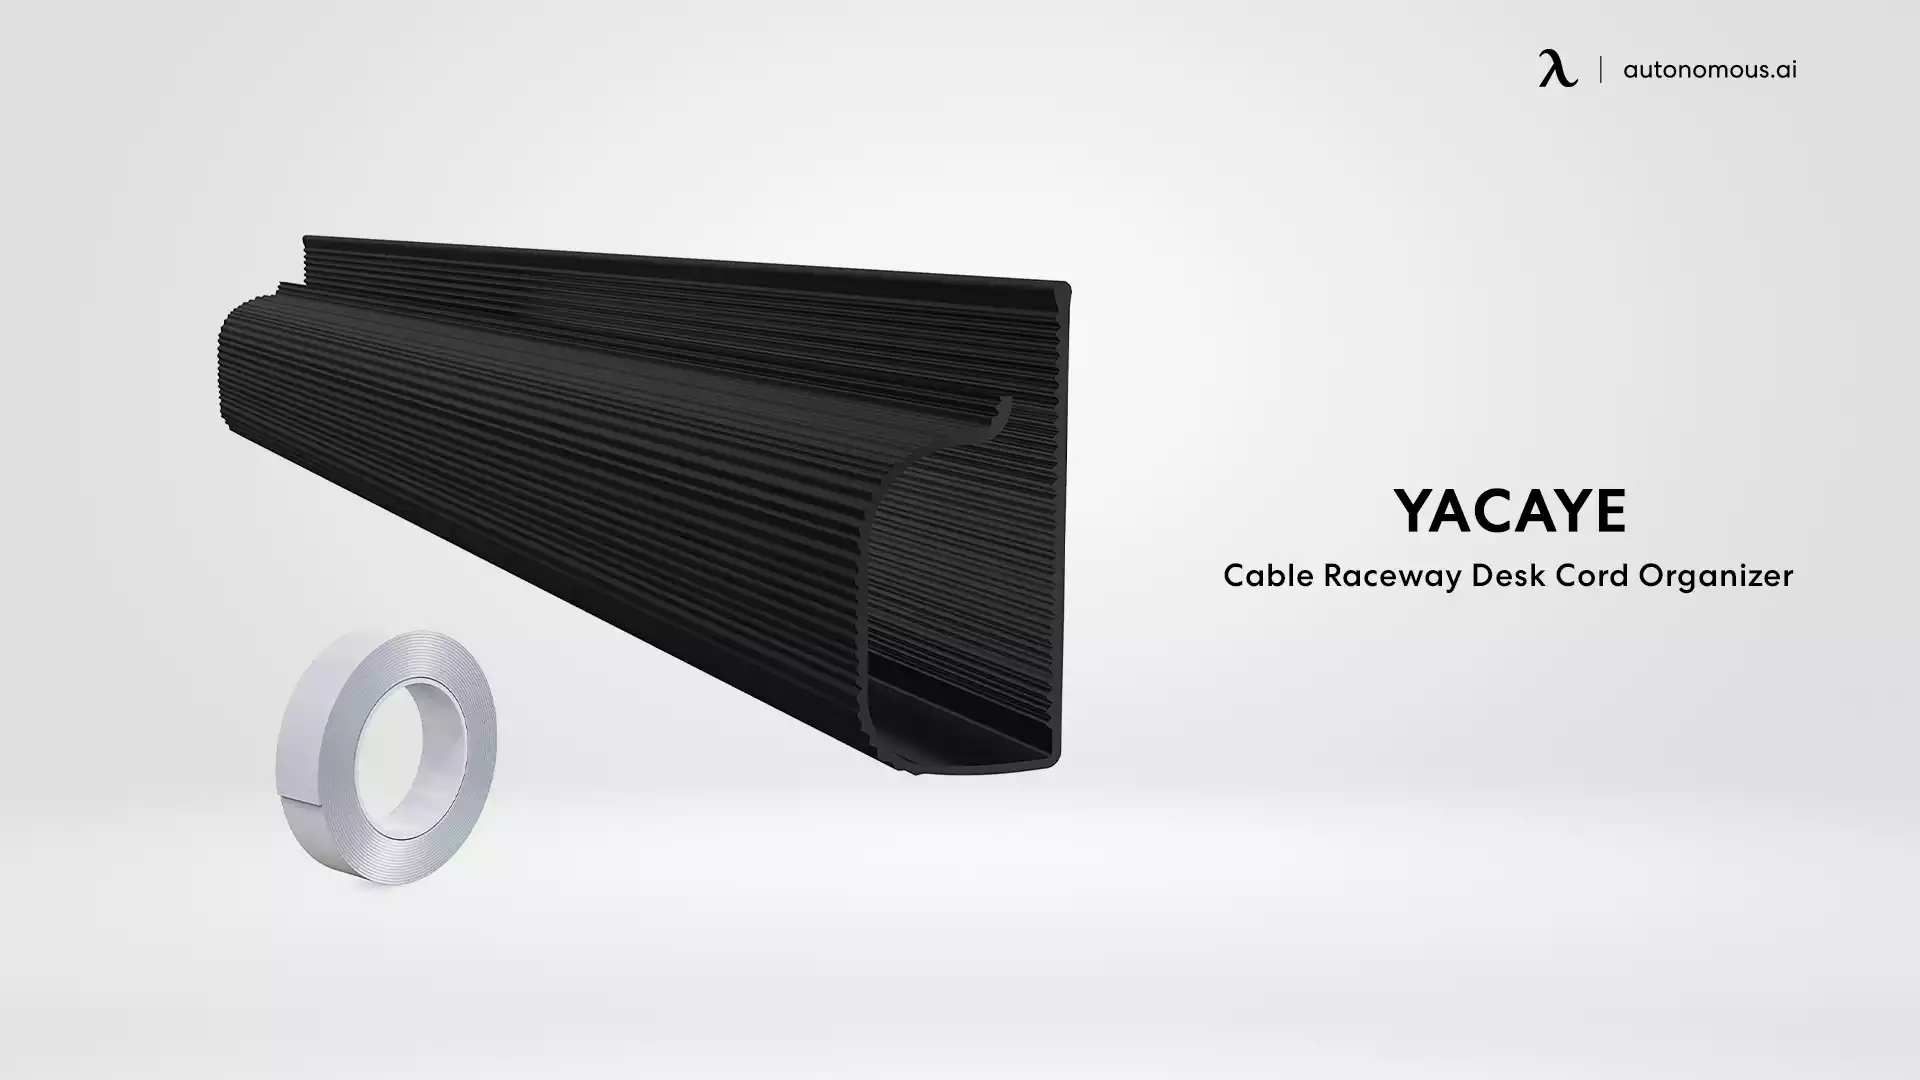 Yacaye Cable Raceway Desk Cord Organizer